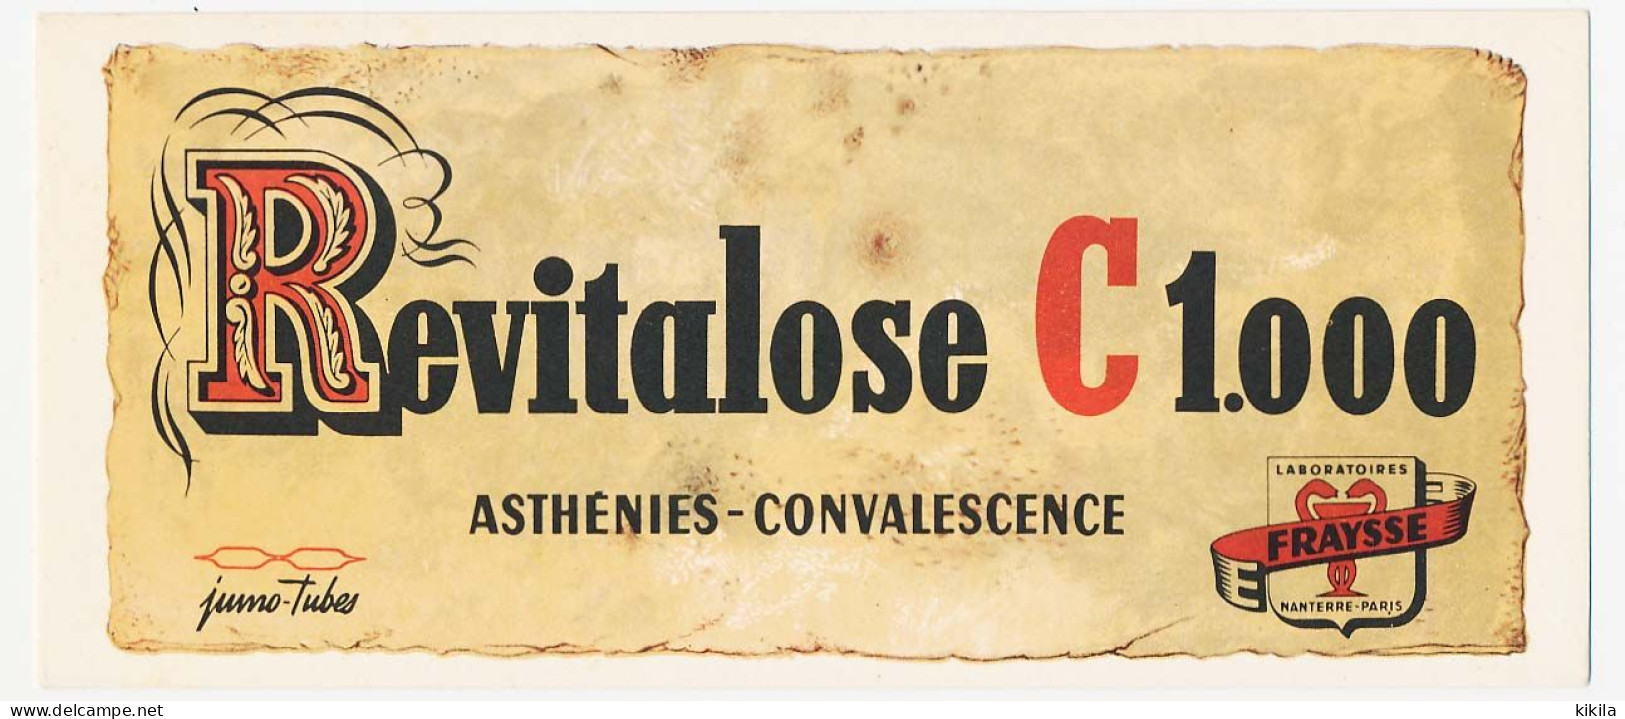 Buvard  21 X 9 Laboratoires E. FRAYSSE  Revitalose C 1.000  Asthénies - Convalescence - Chemist's